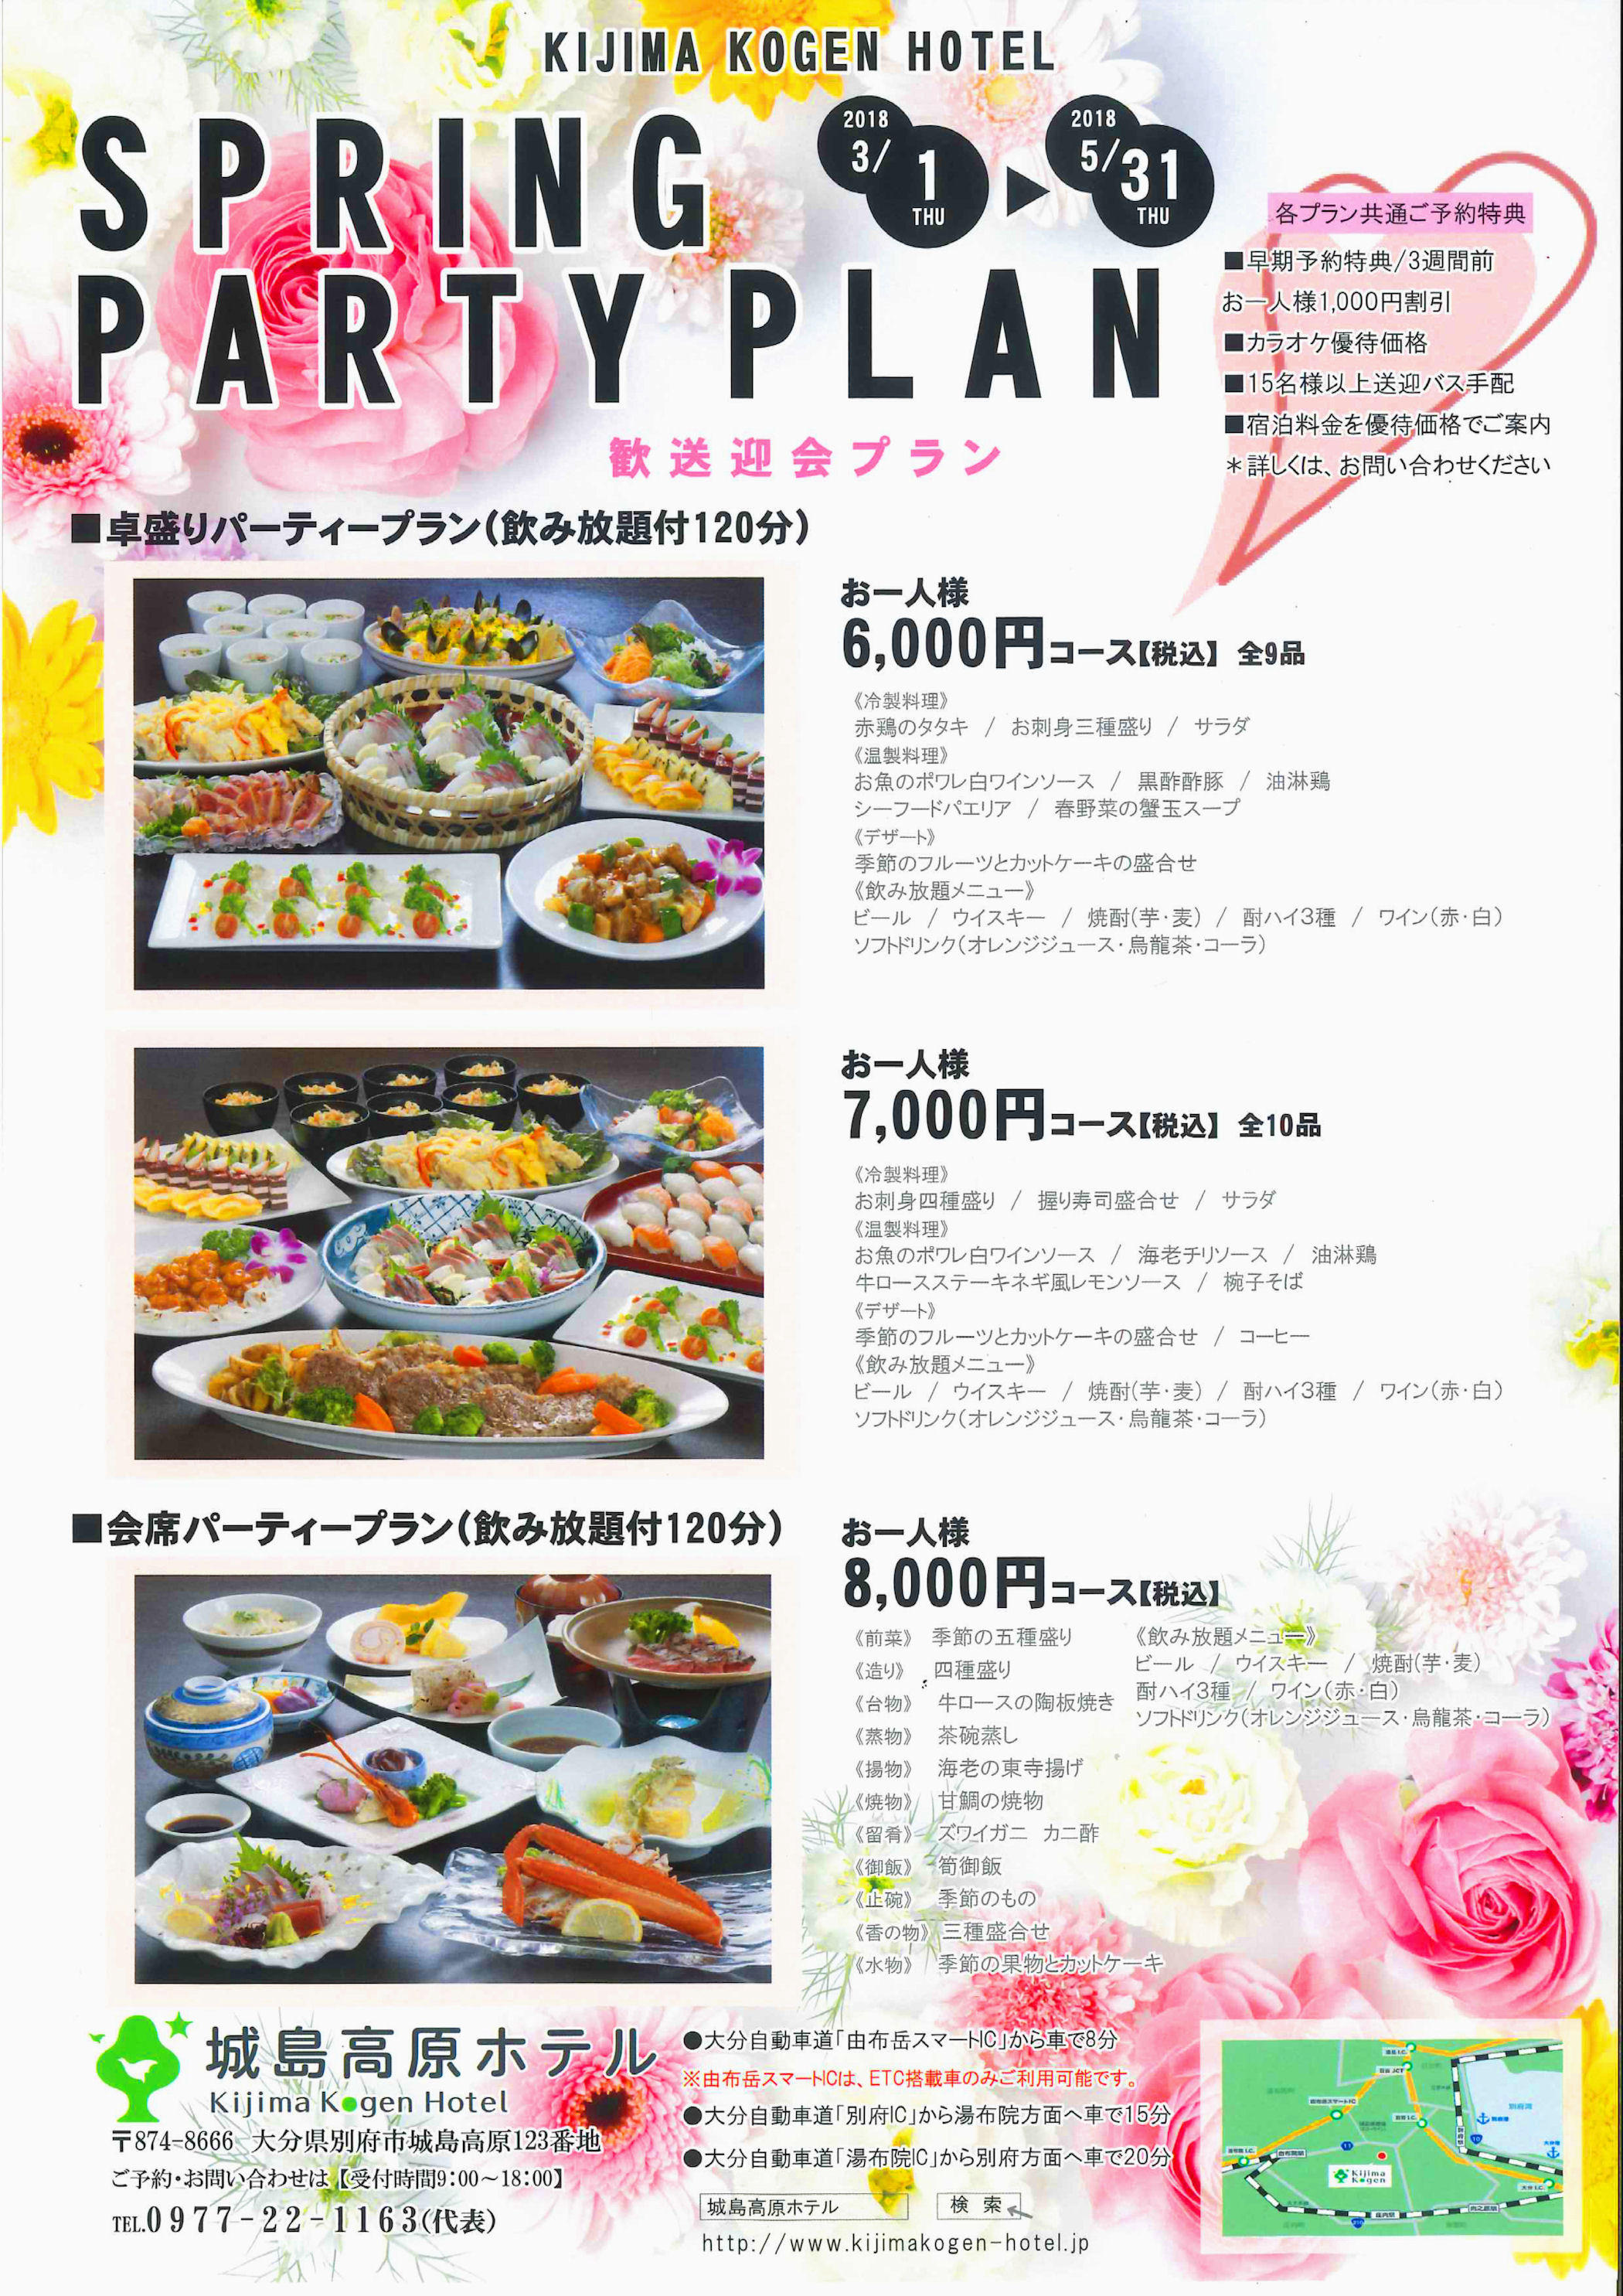 http://www.kijimakogen-hotel.jp/important/spring%20party%20plan.jpg